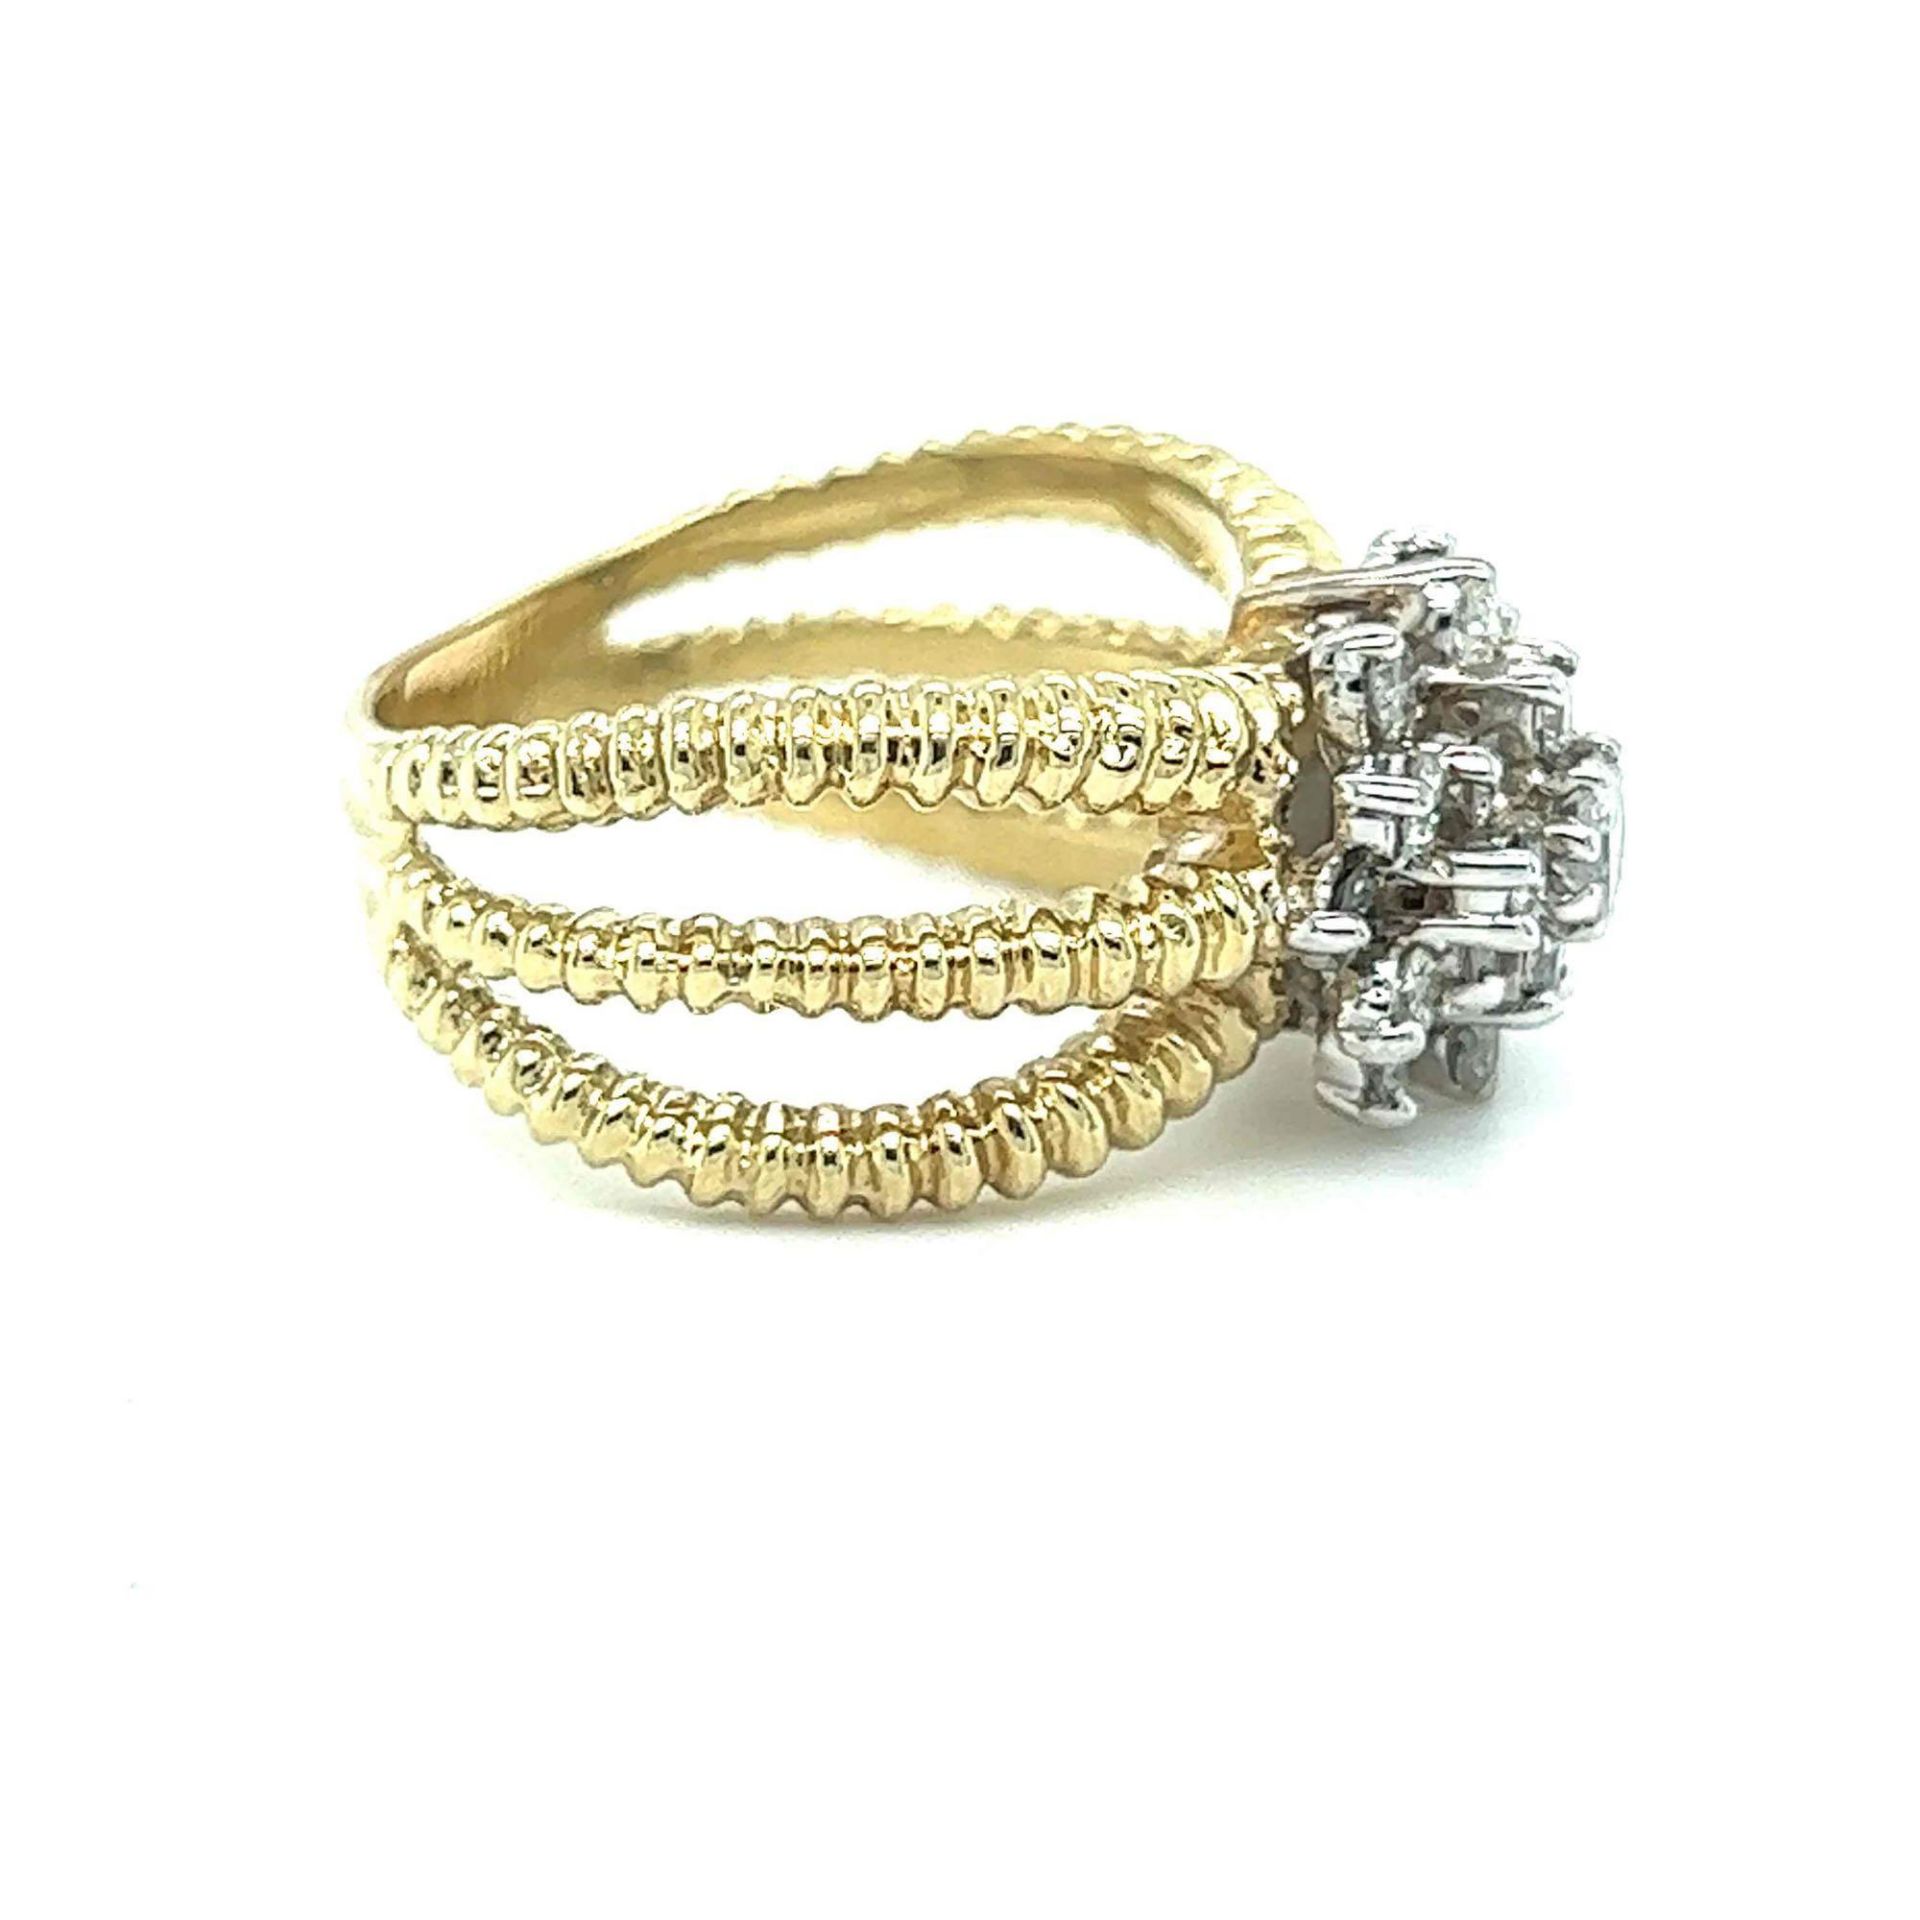 ESTATE LADIES DIAMOND RING 14K YELLOW GOLD - Image 2 of 3